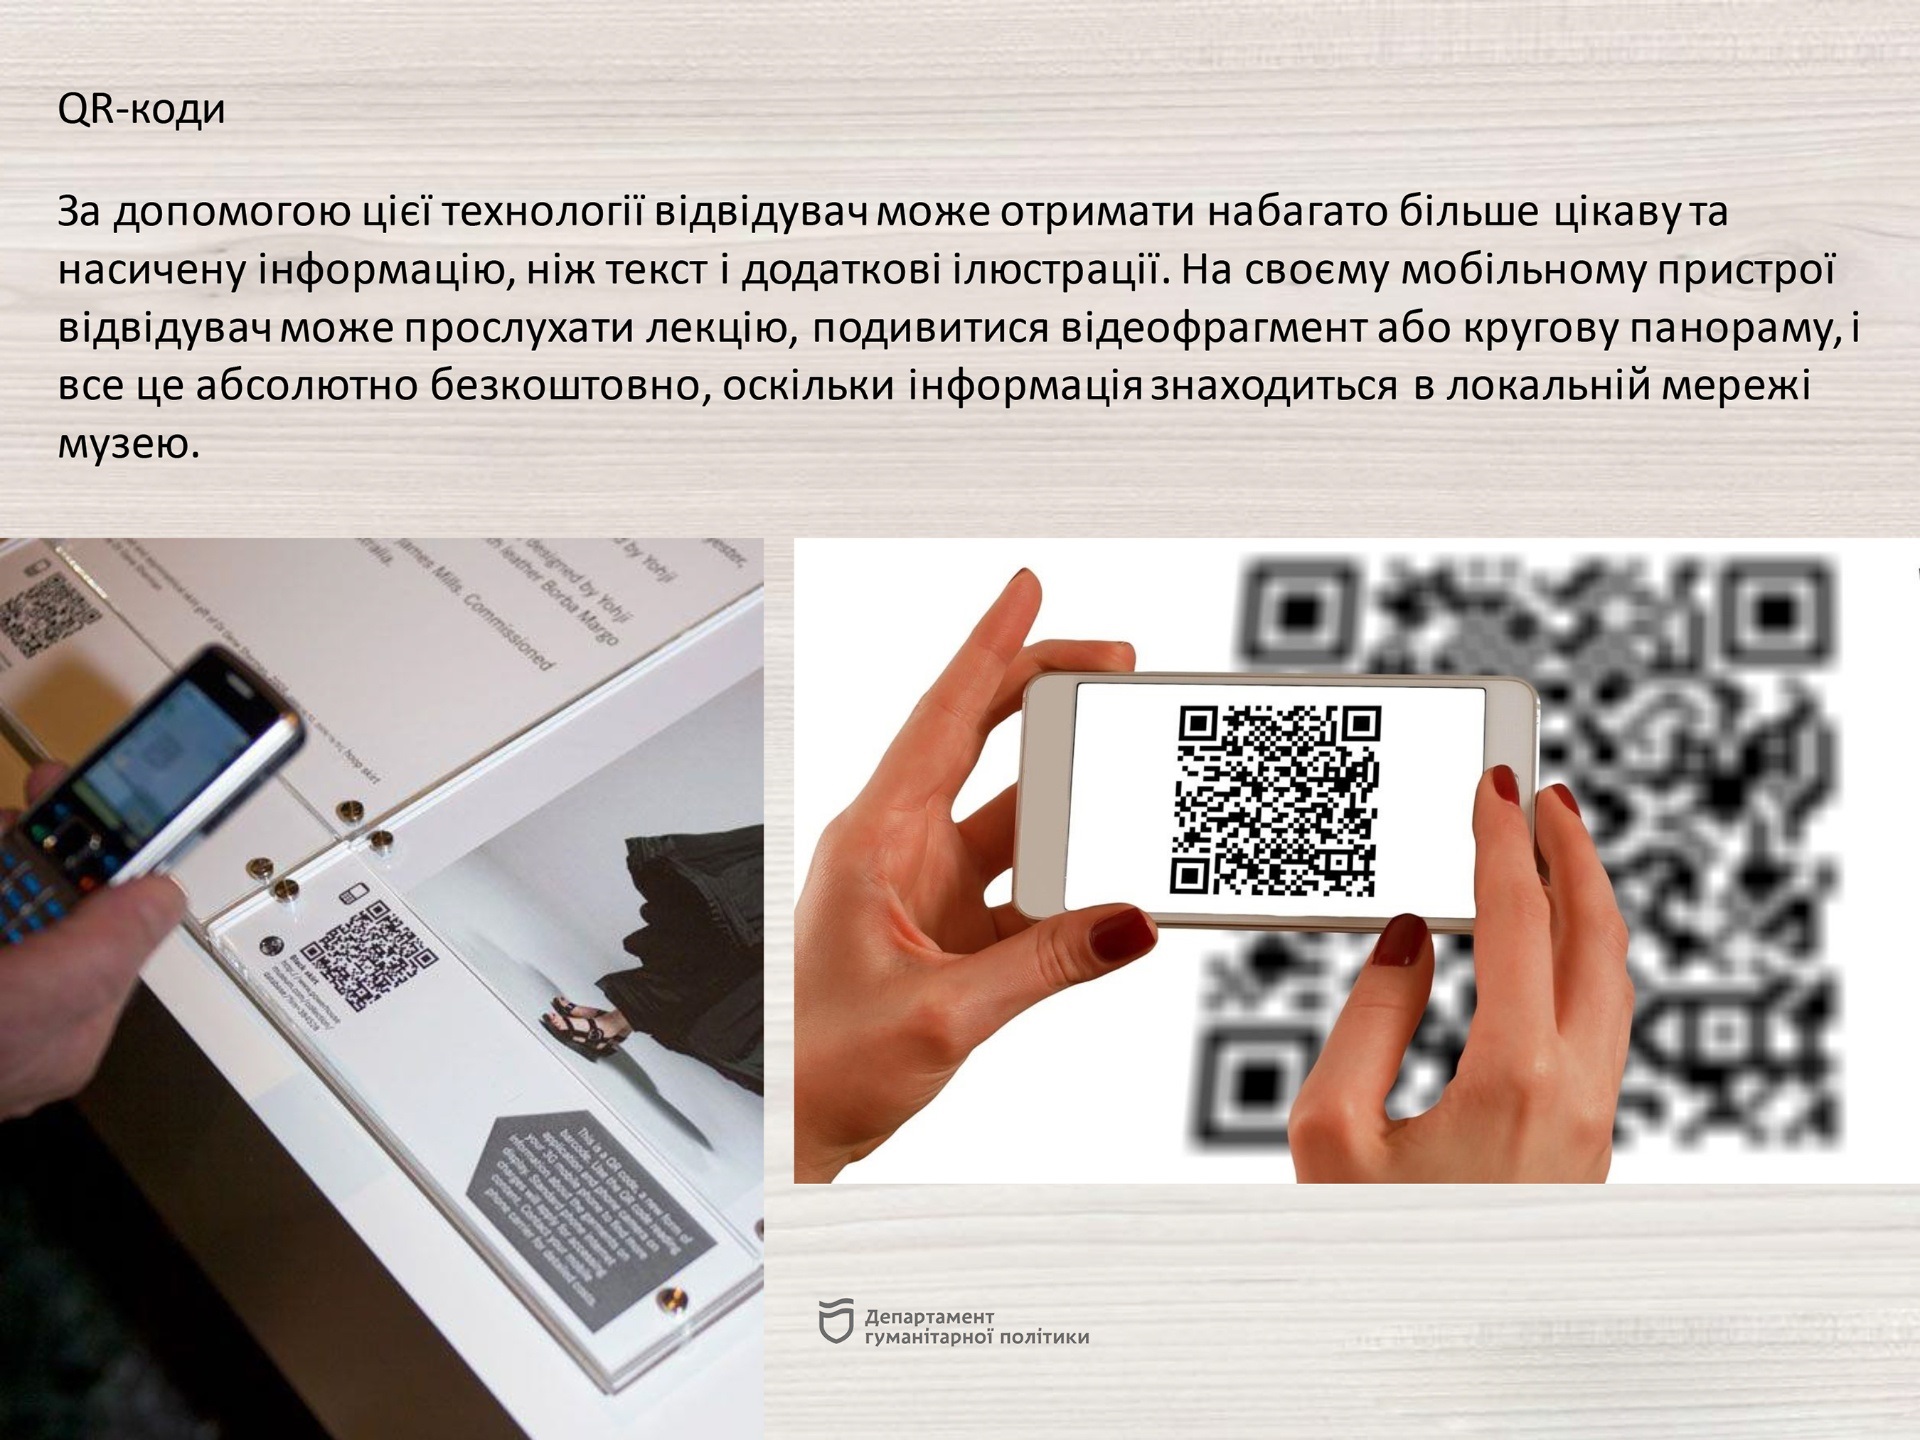 Музей будет с современными технологиями - || фото: dniprorada.gov.ua